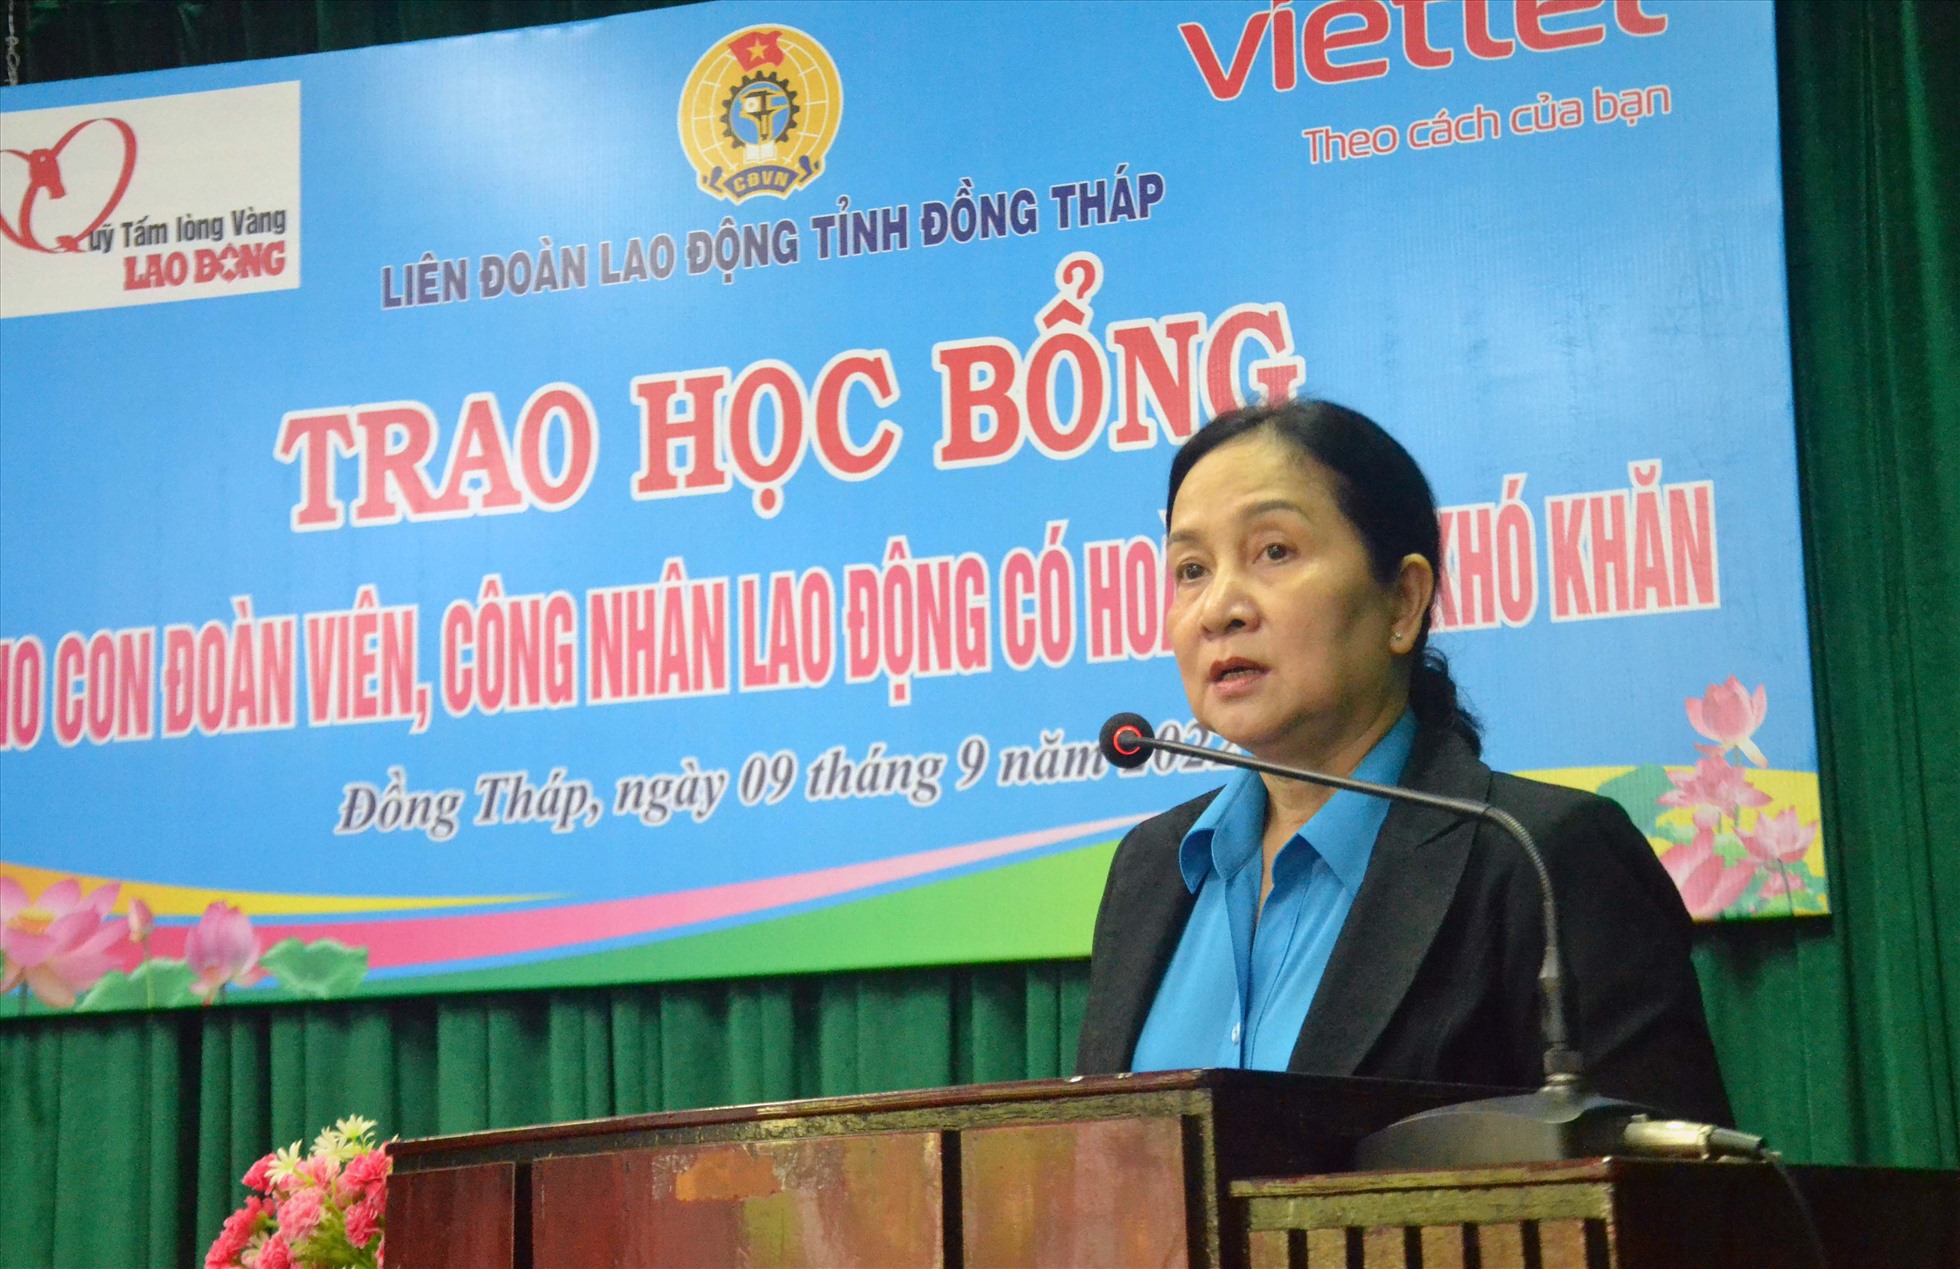 Phó Chủ tịch LĐLĐ tỉnh Đồng Tháp Nguyễn Thị Thu Ba phát biểu tại buổi lễ trao học bổng Quỹ Tấm lòng vàng. Ảnh: LT